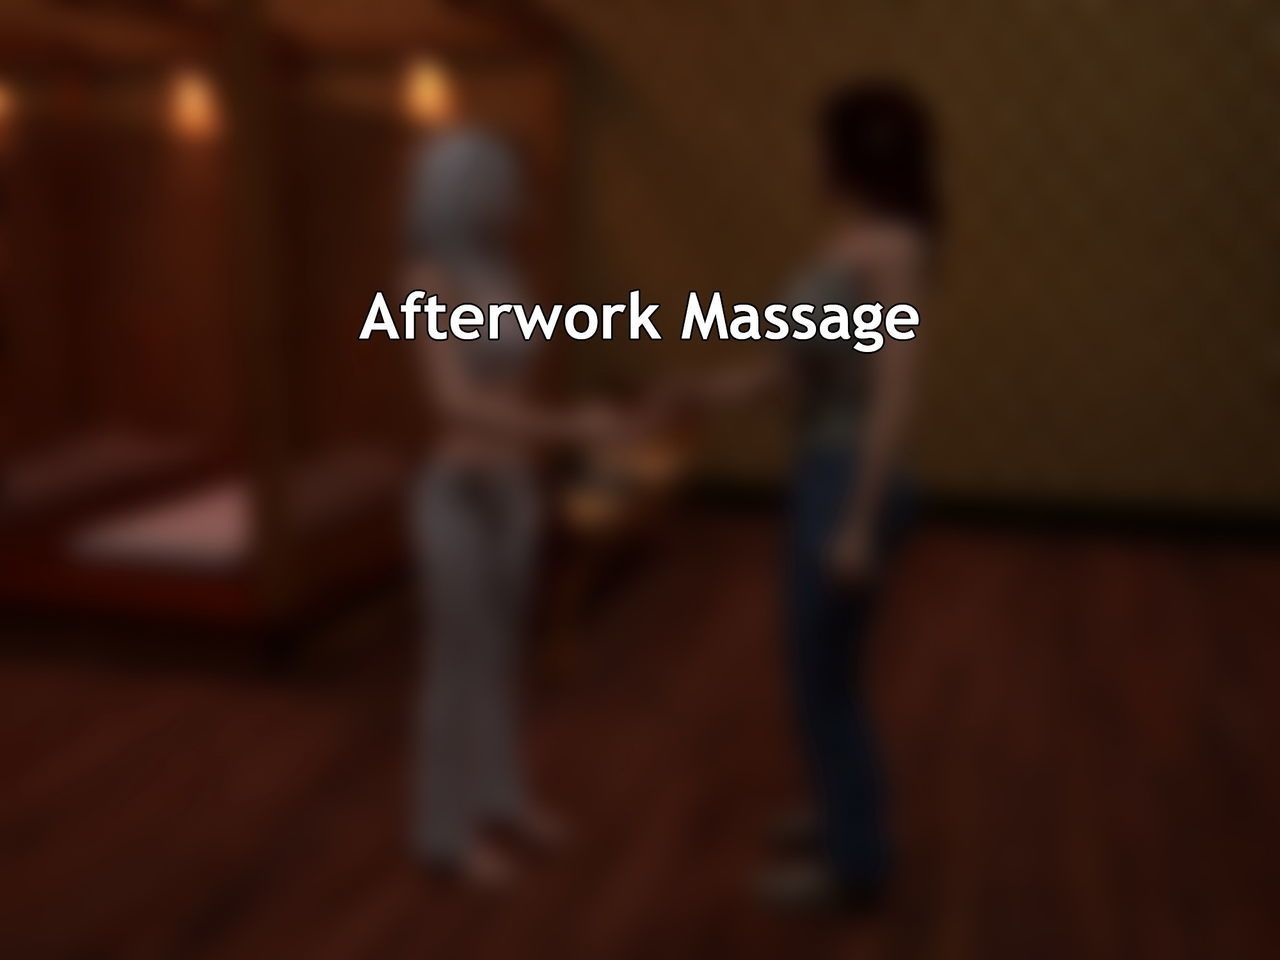 [morfium] afterwork massage